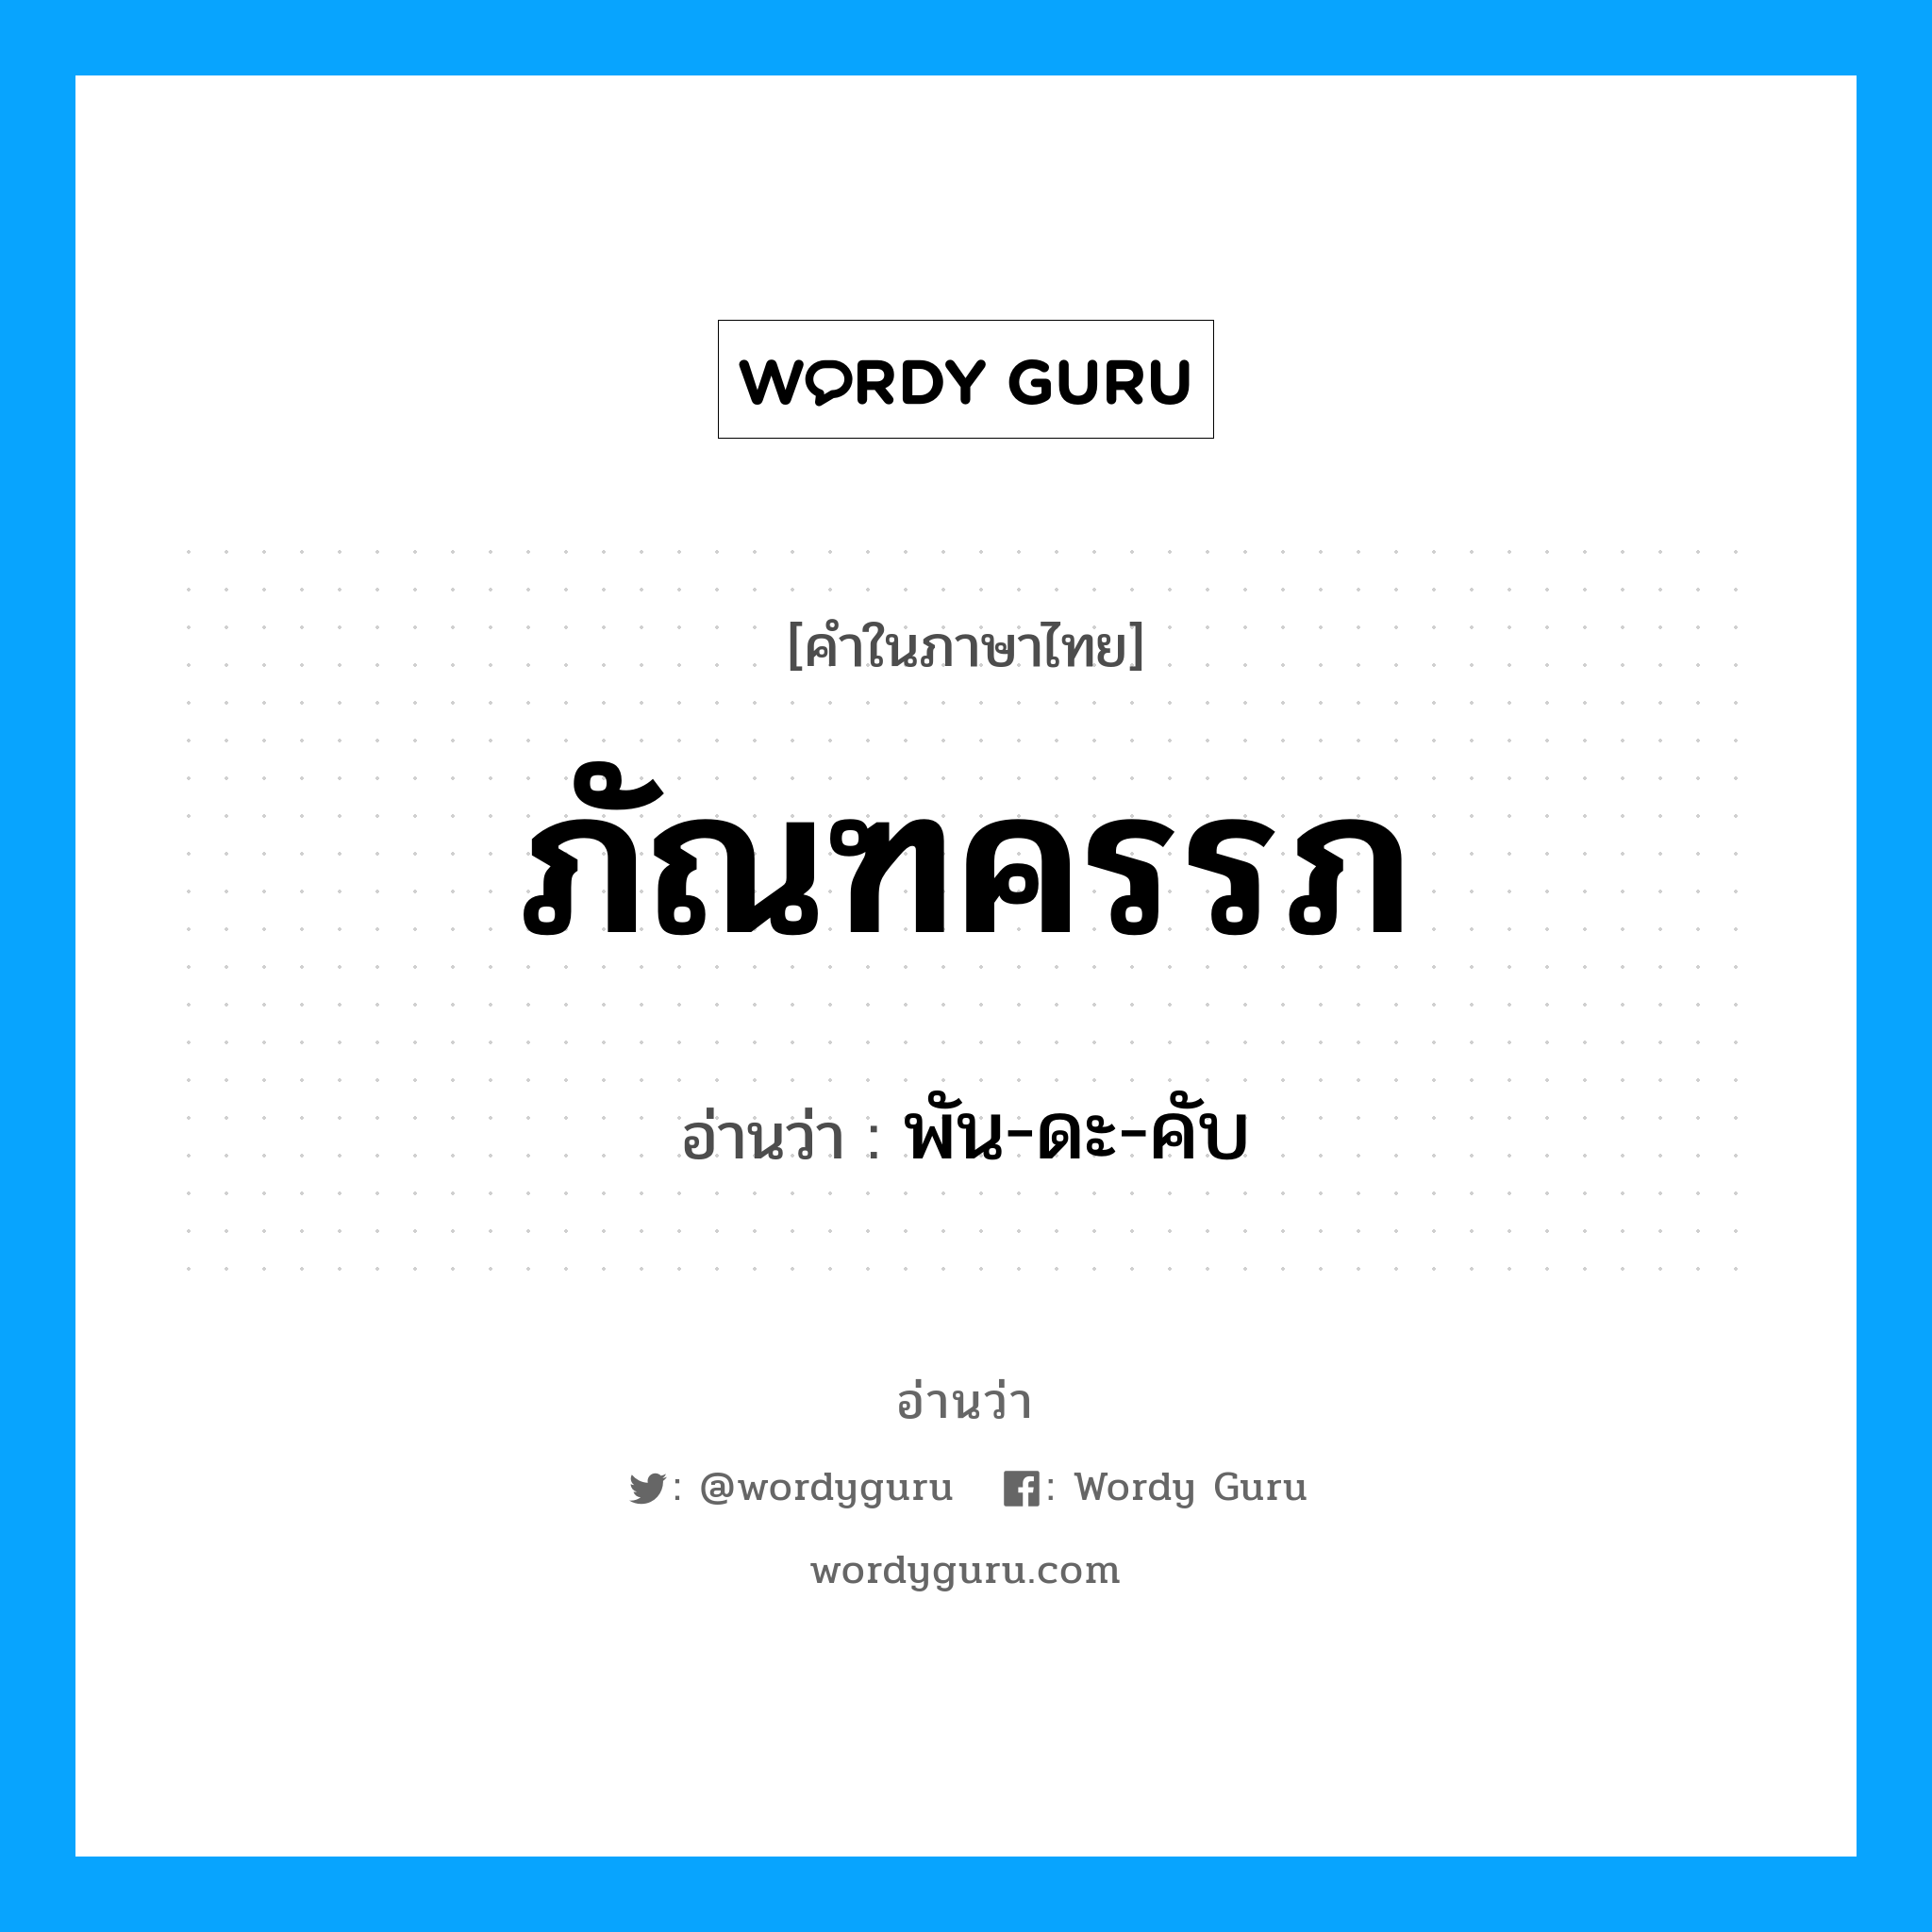 พัน-ดะ-คับ เป็นคำอ่านของคำไหน?, คำในภาษาไทย พัน-ดะ-คับ อ่านว่า ภัณฑครรภ